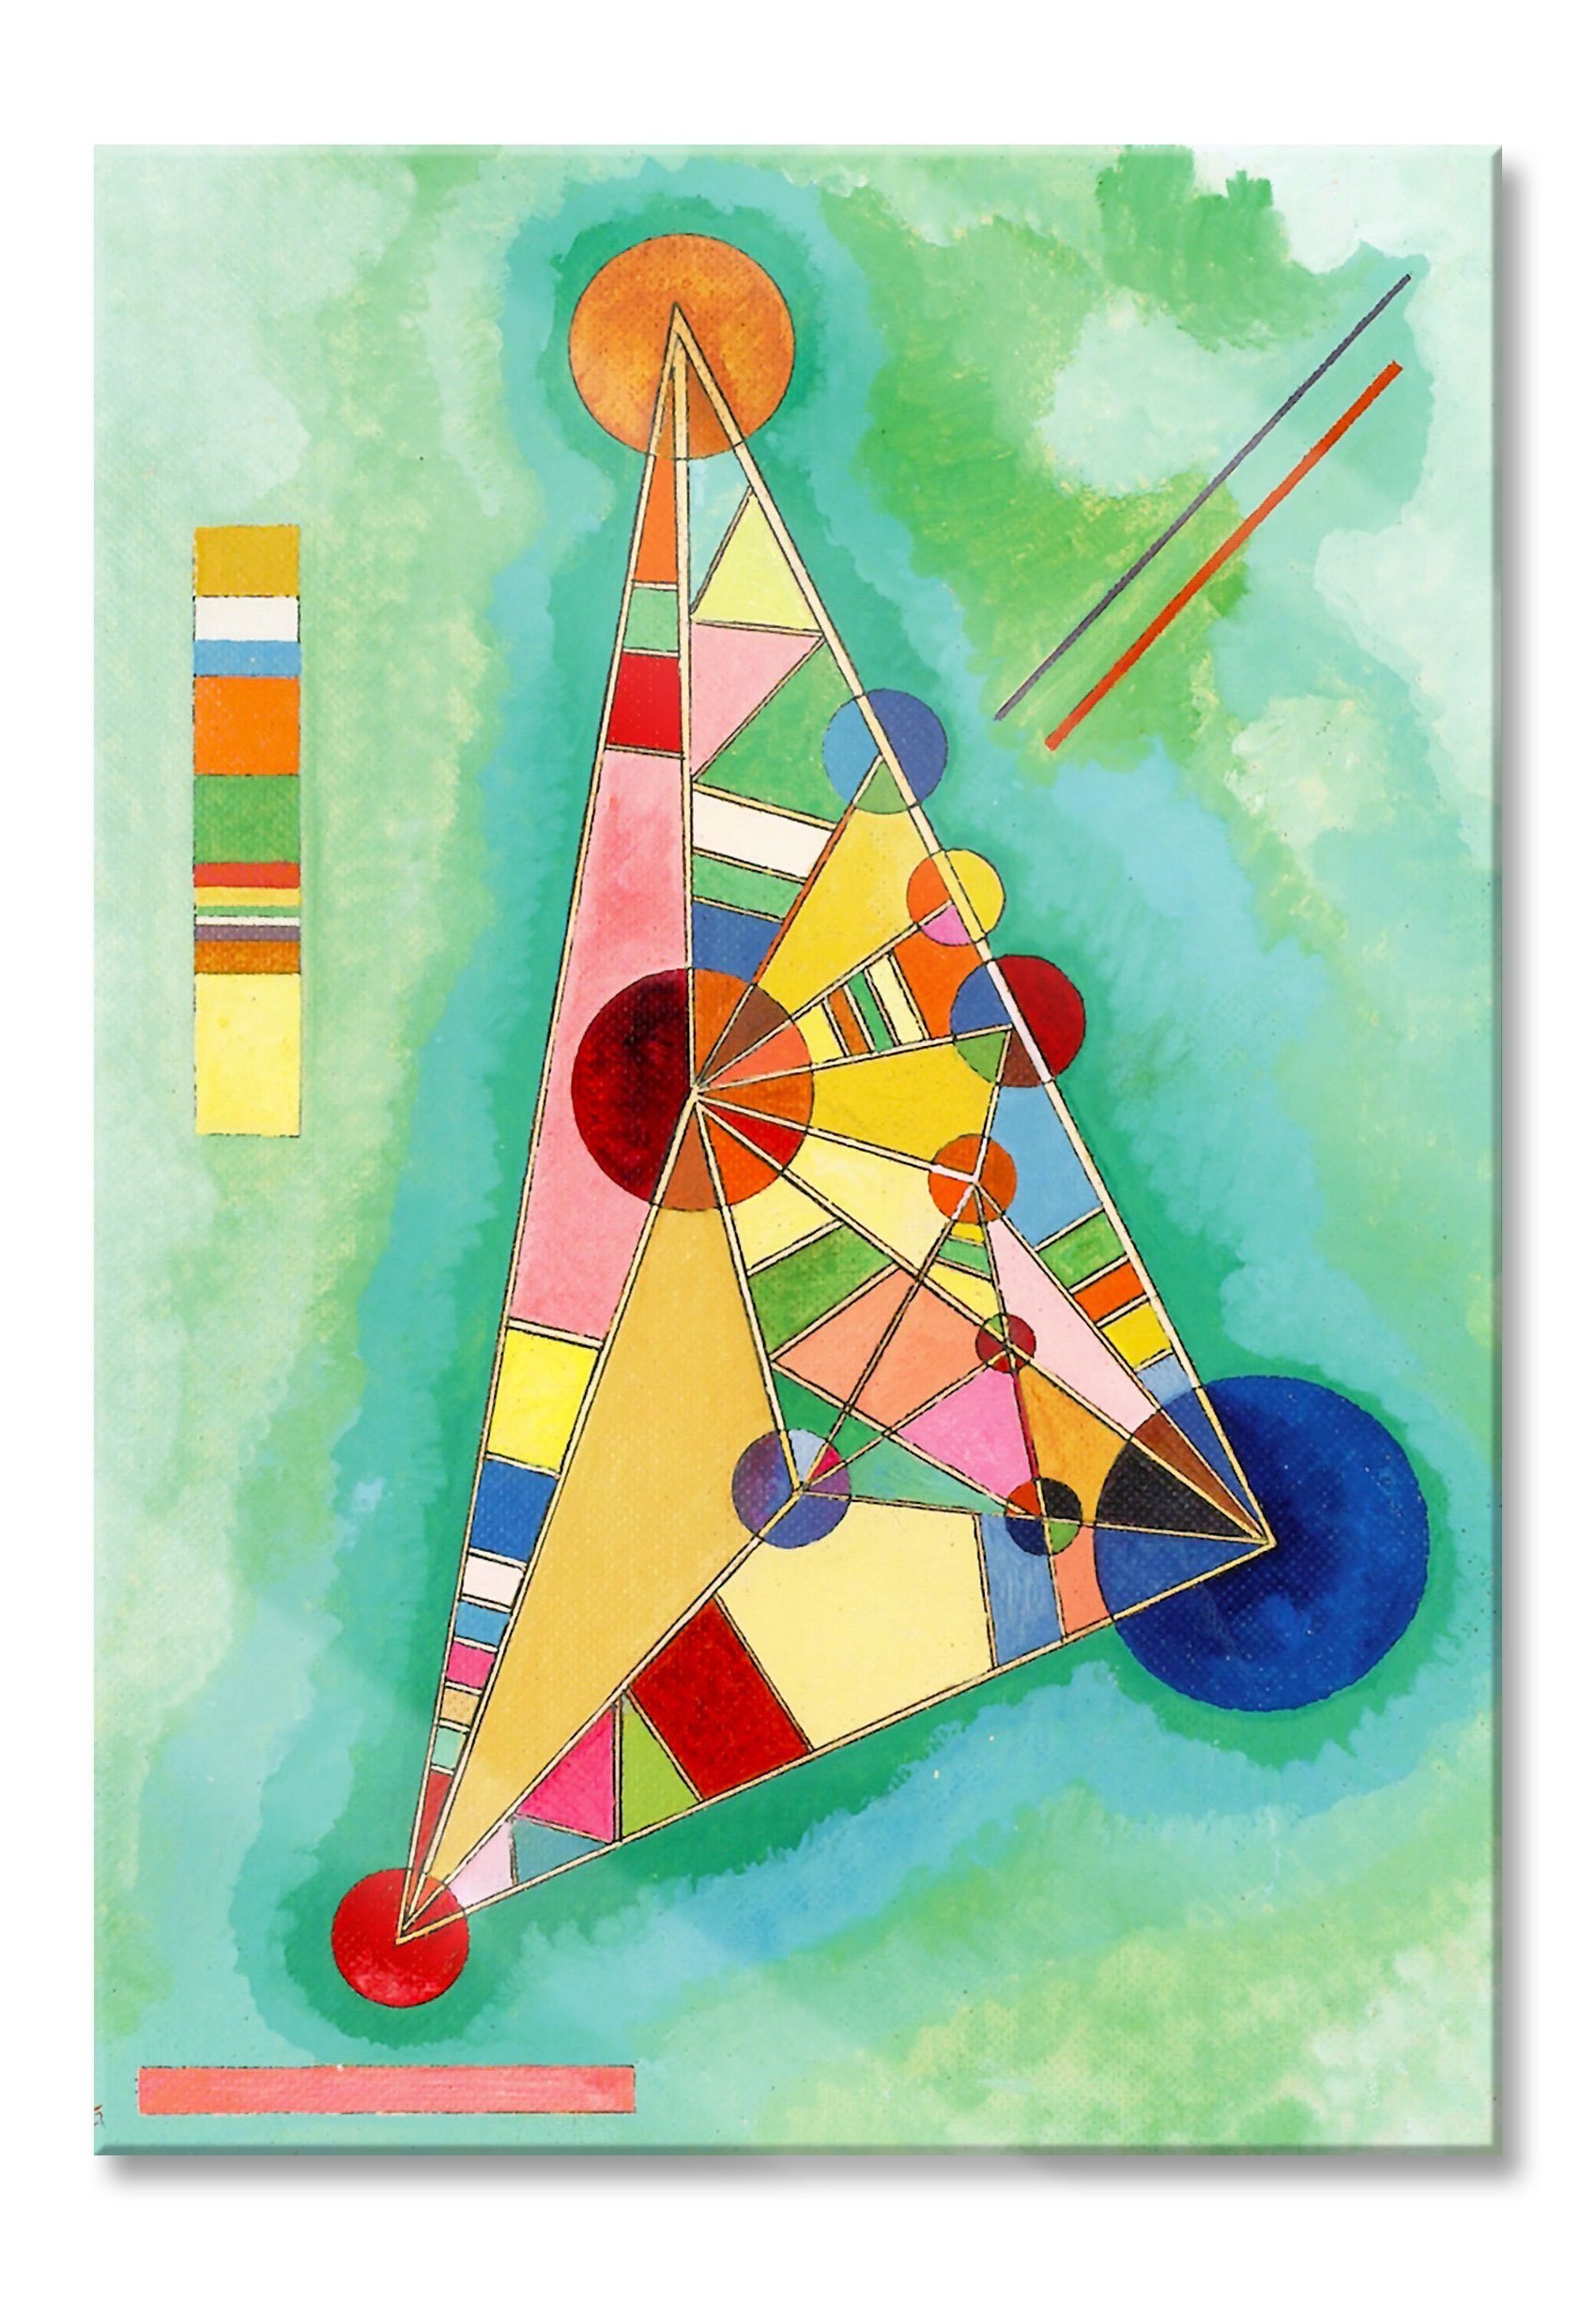 Pixxprint Glasbild Wassily Kandinsky - Bild mit weißem Rand, Wassily Kandinsky - Bild mit weißem Rand (1 St), Glasbild aus Echtglas, inkl. Aufhängungen und Abstandshalter